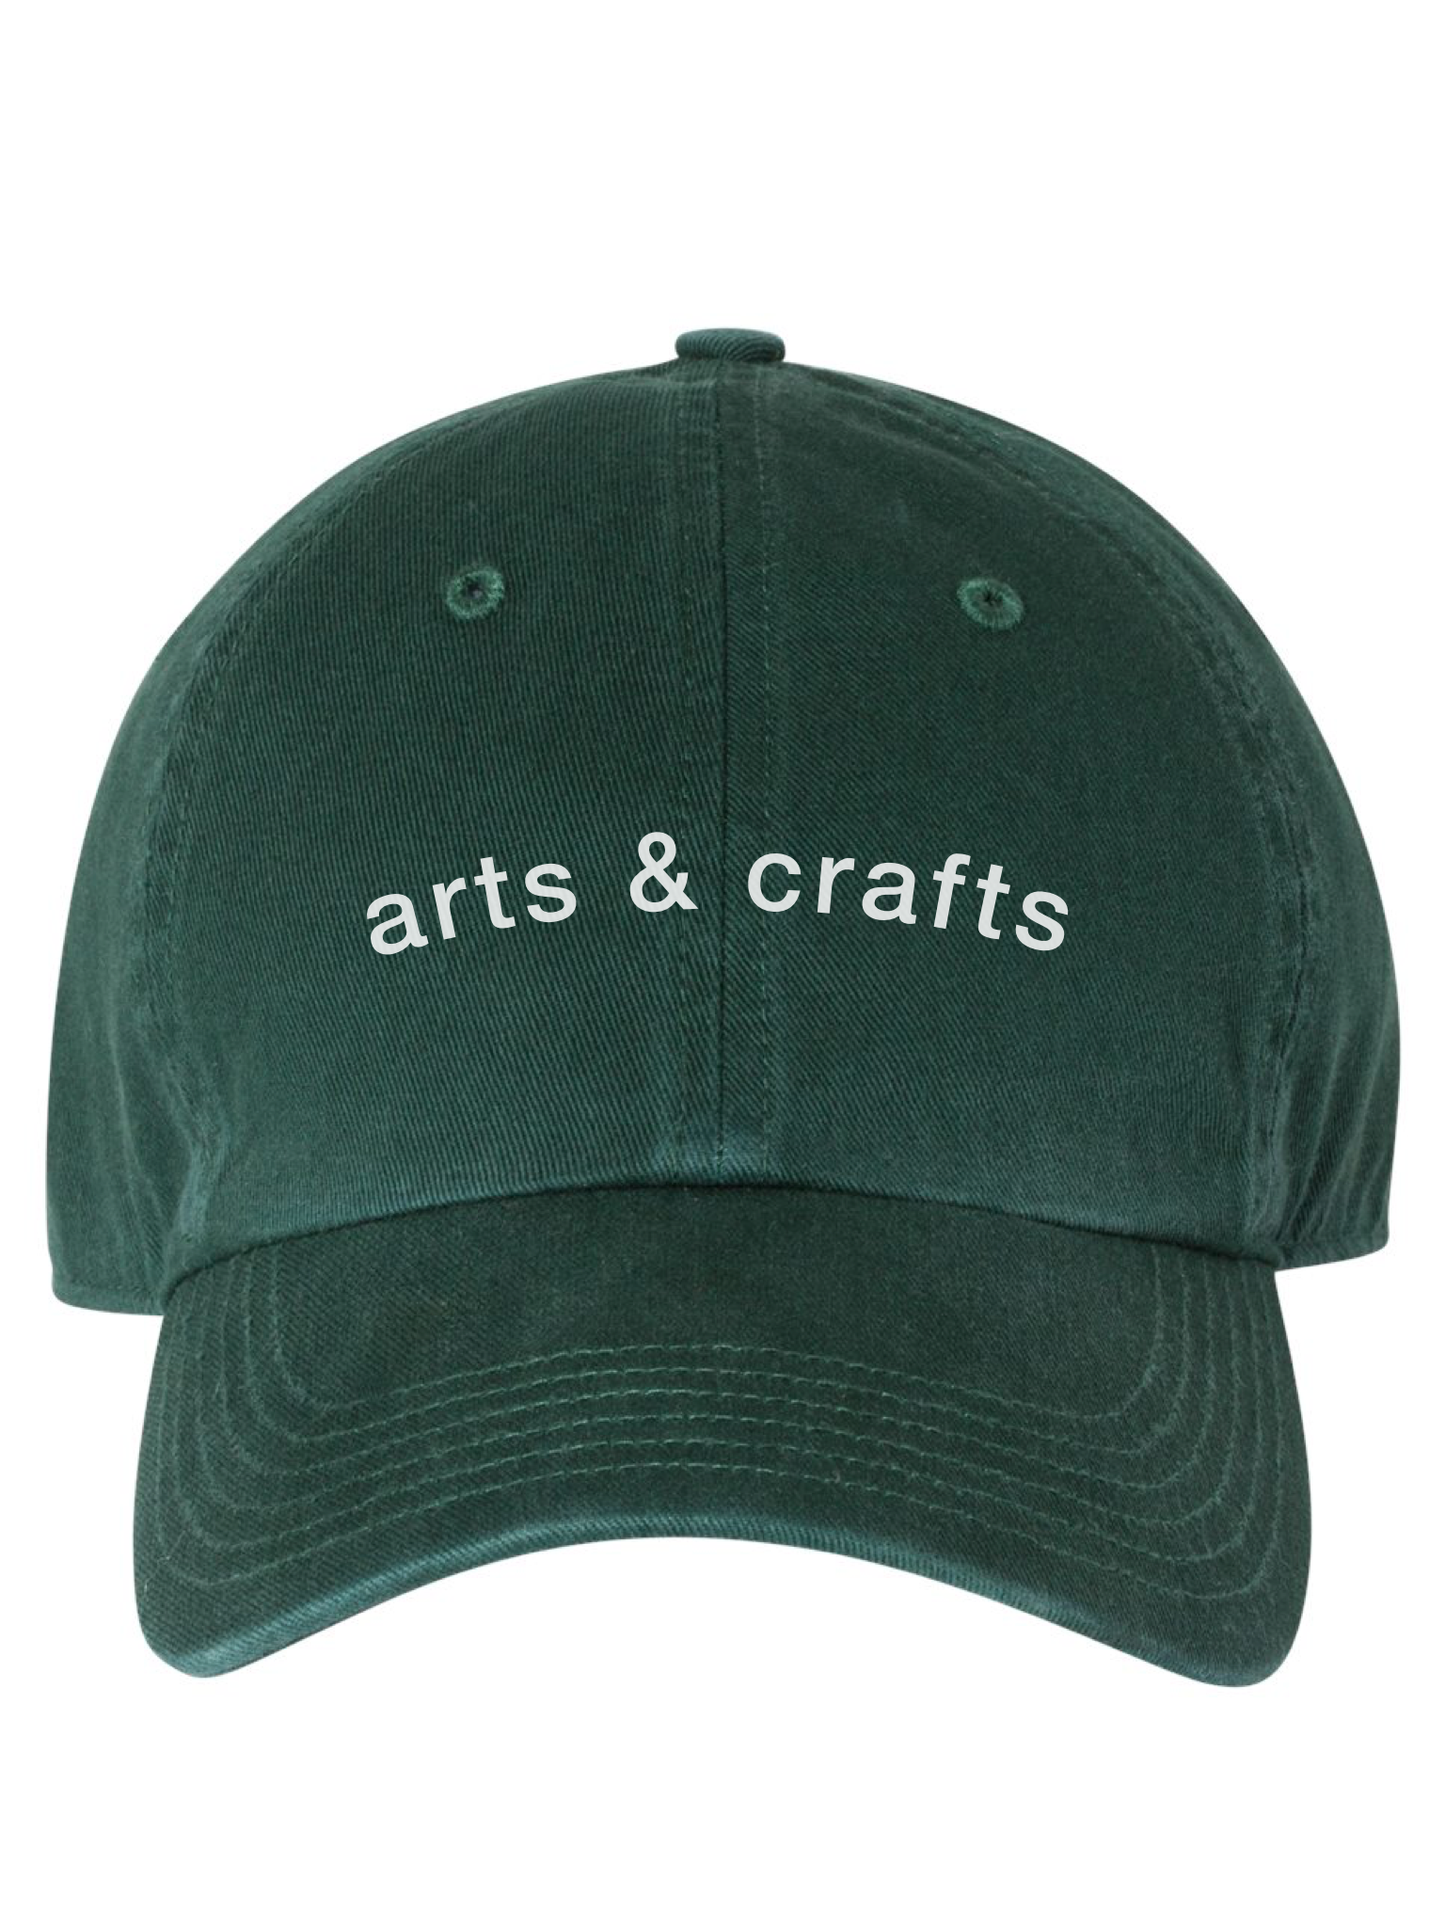 Arts & Crafts Cap